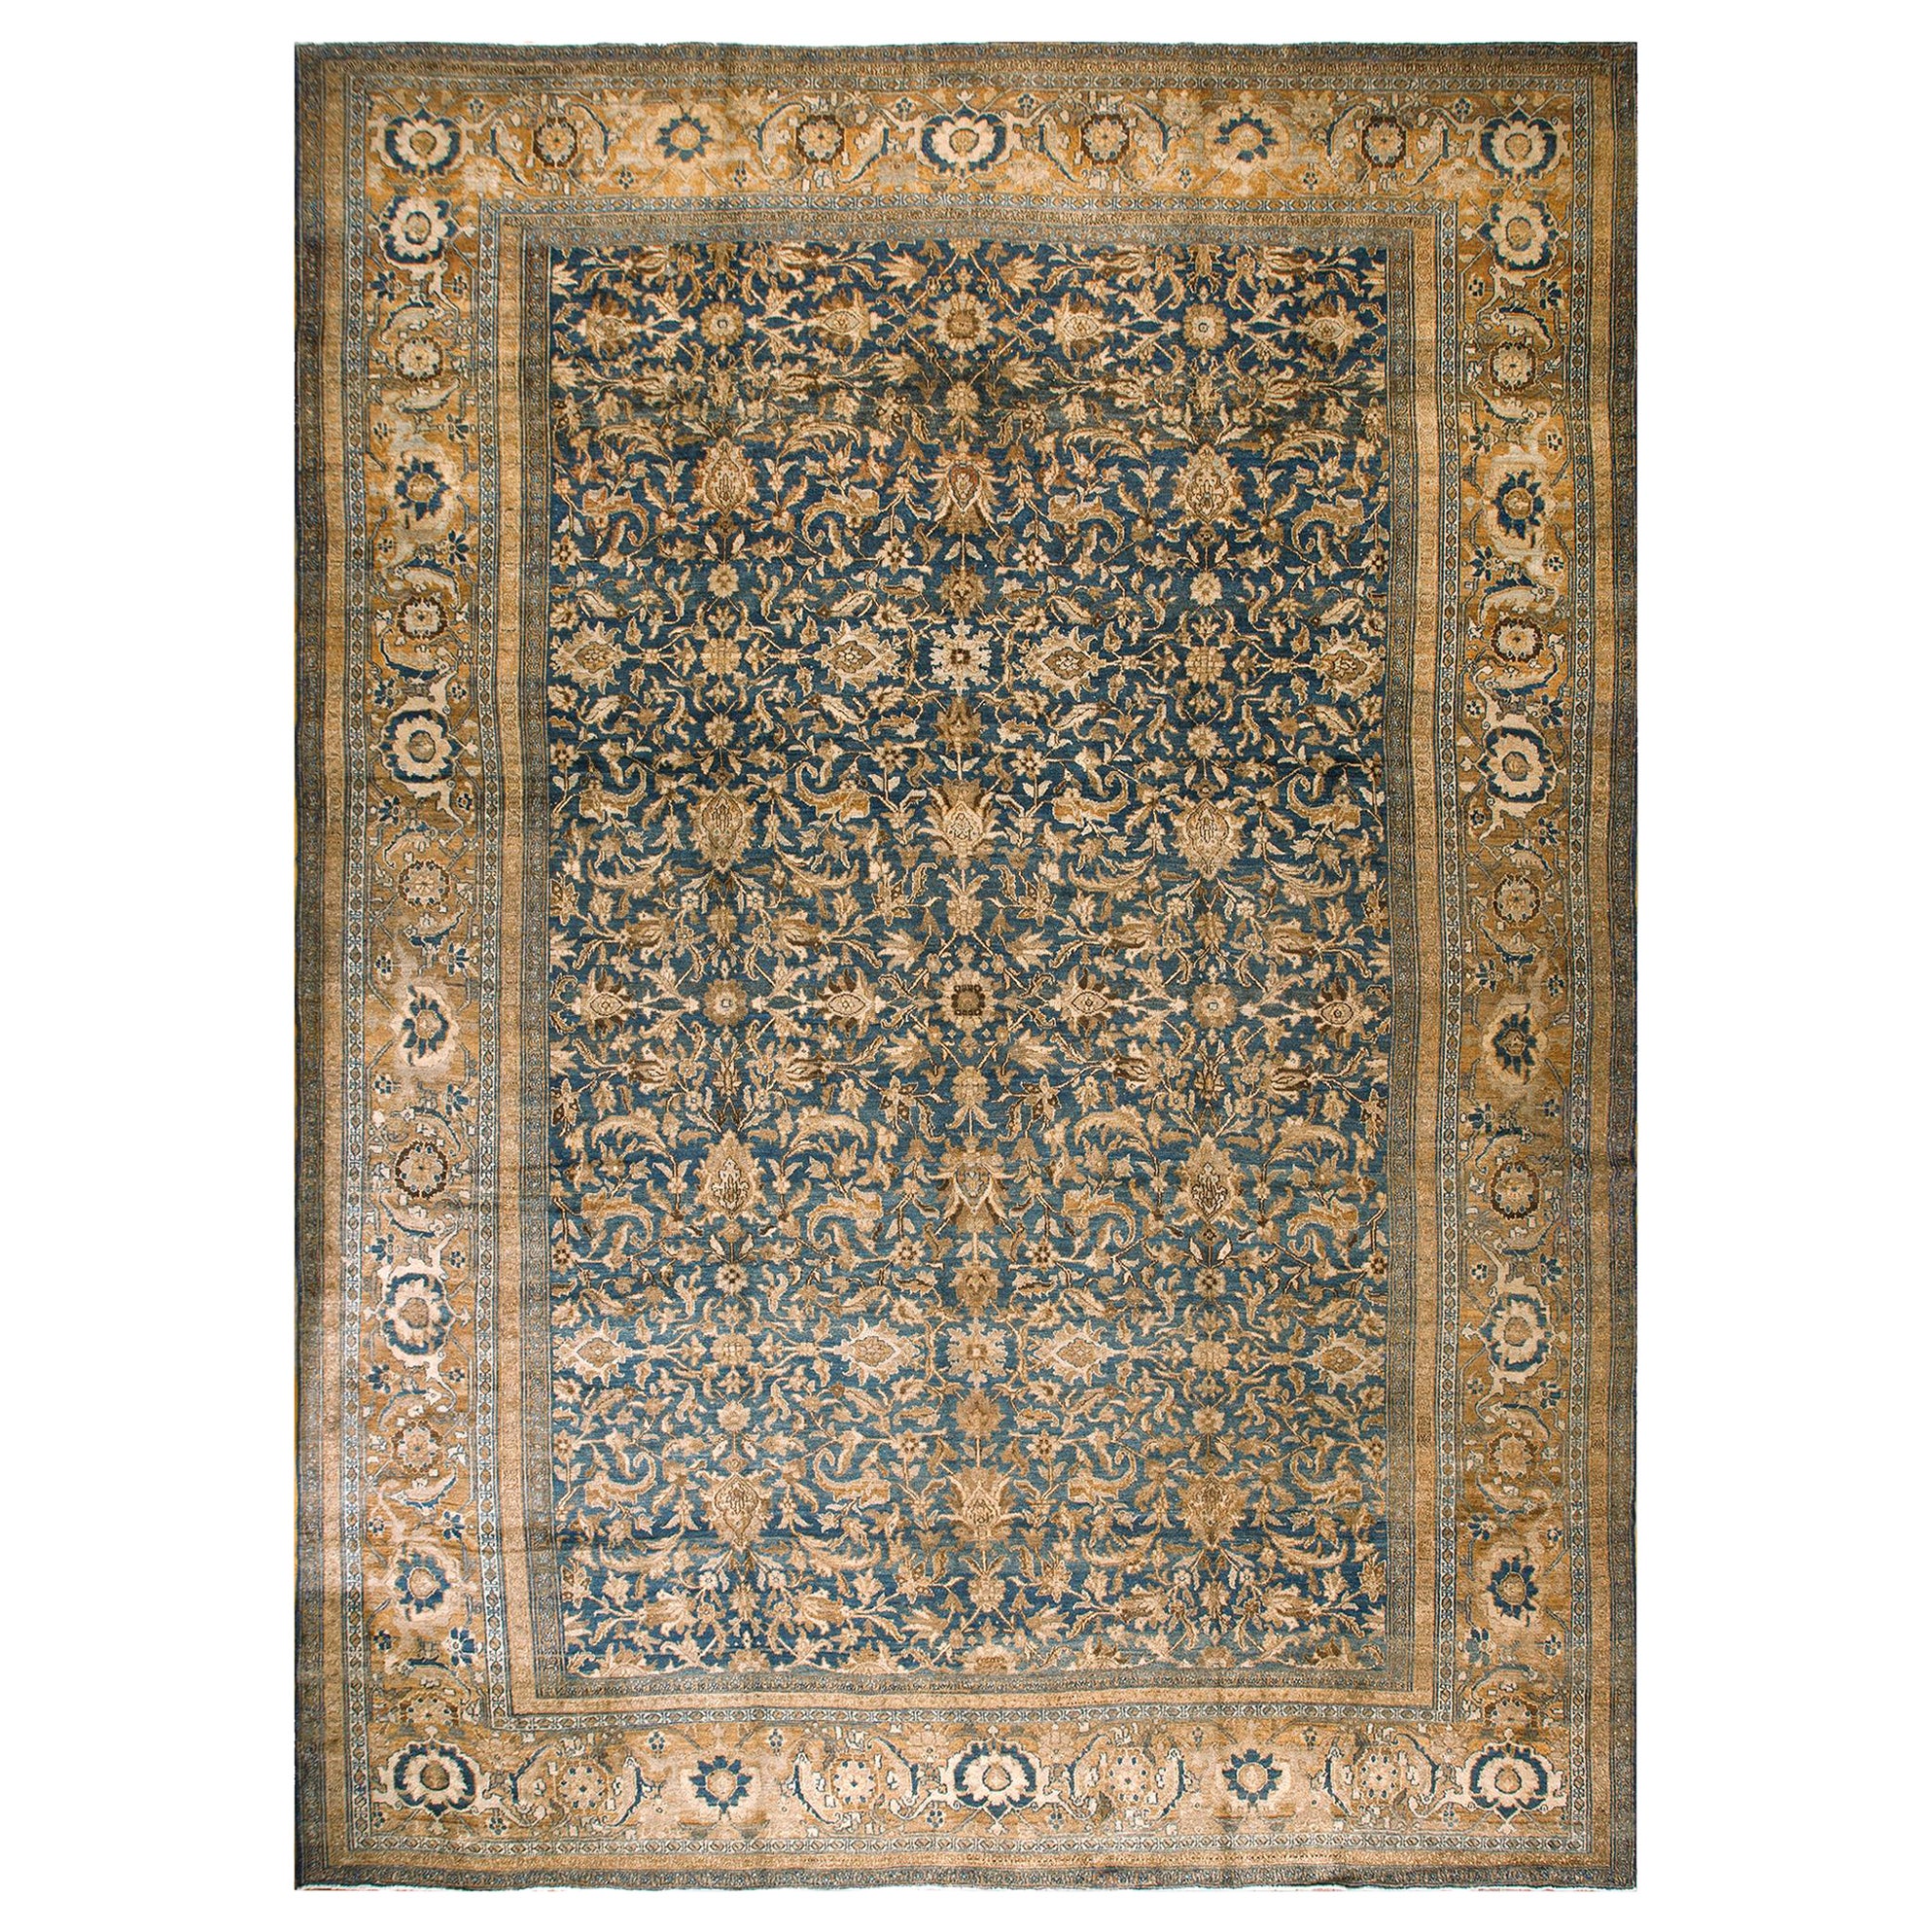 Persischer Bibikabad-Teppich des späten 19. Jahrhunderts ( 12'5" x 17'5" - 378 x 530)